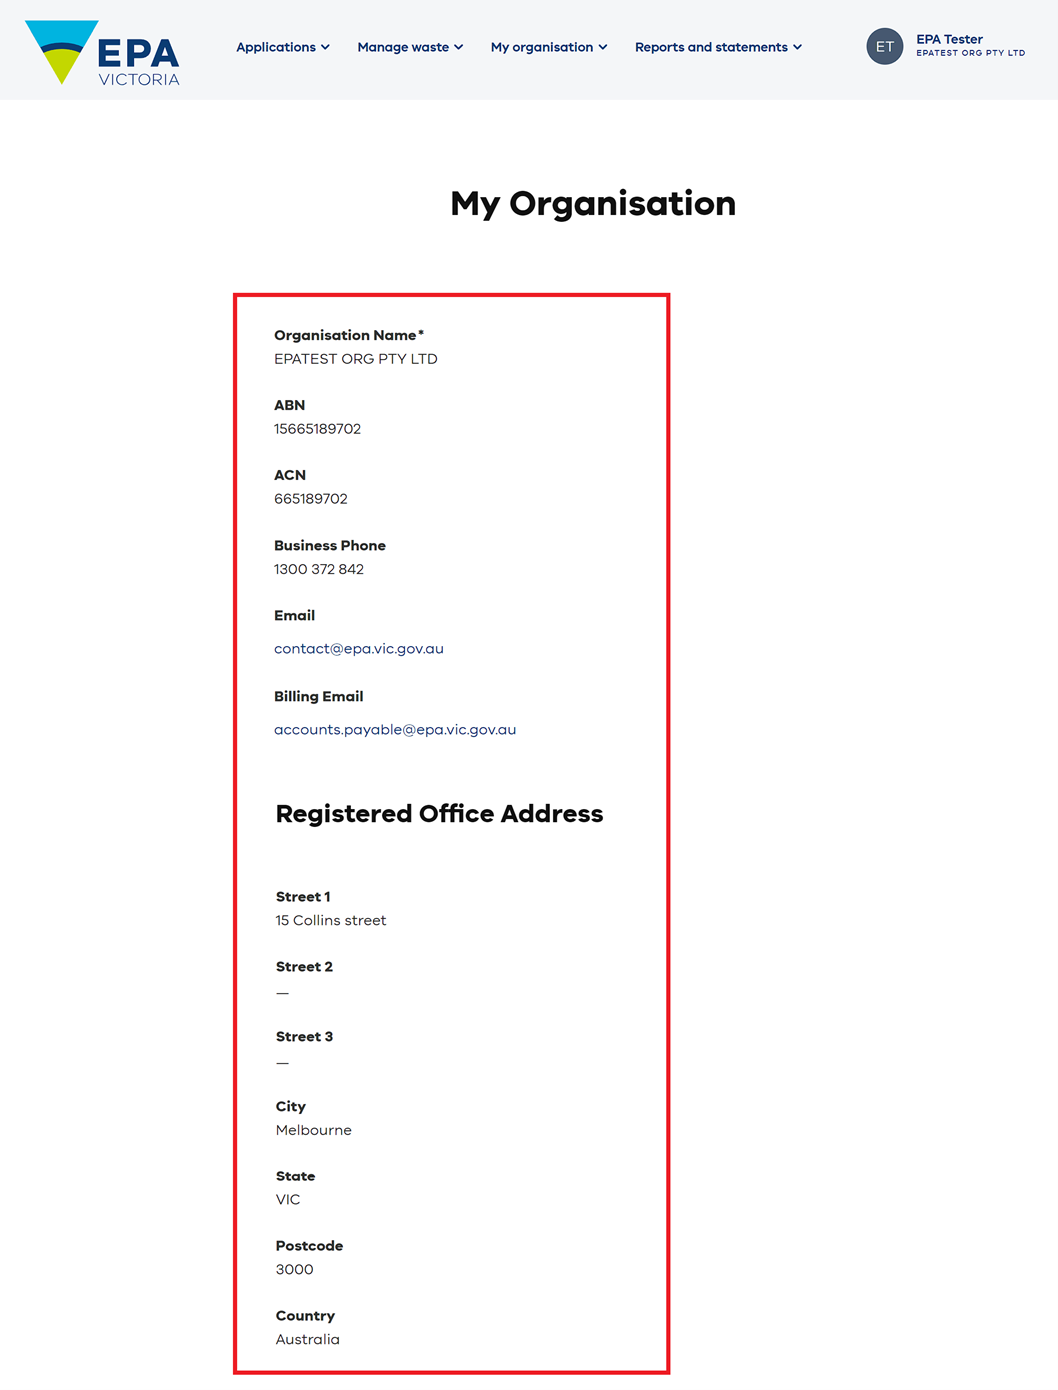 view organisation details